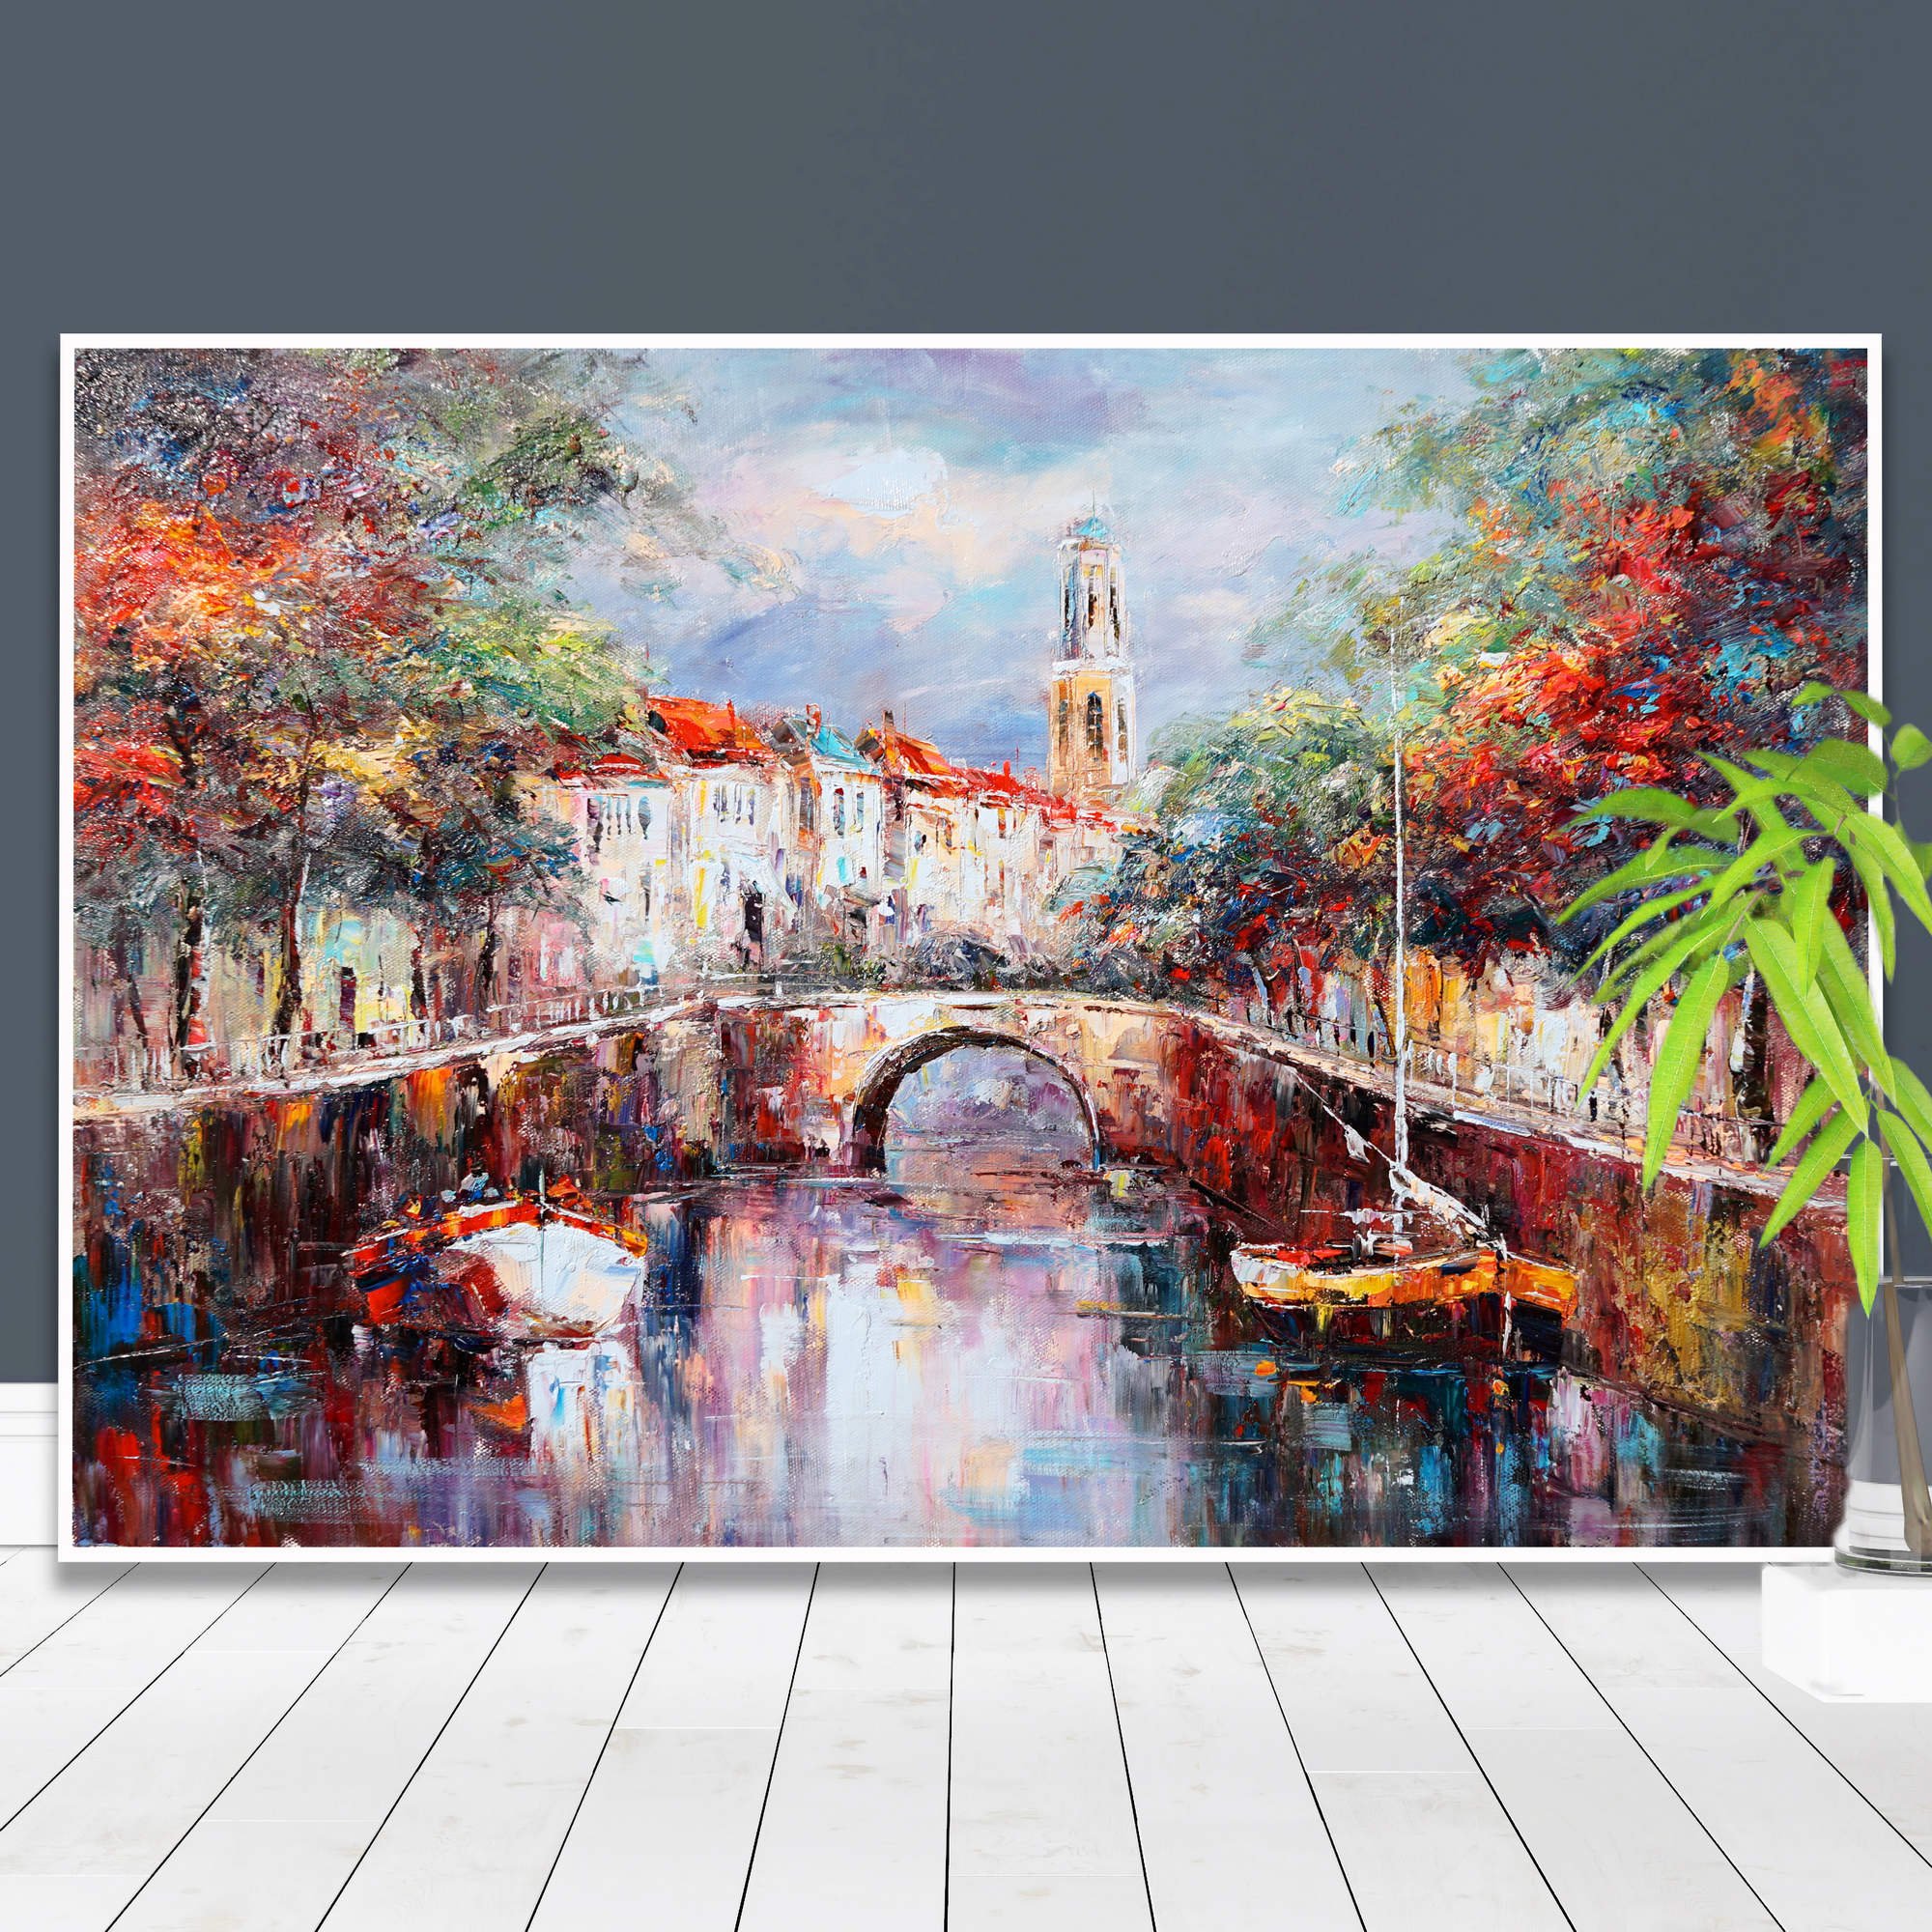 Dipinto di un tipico canale olandese con barche, alberi colorati e architettura storica